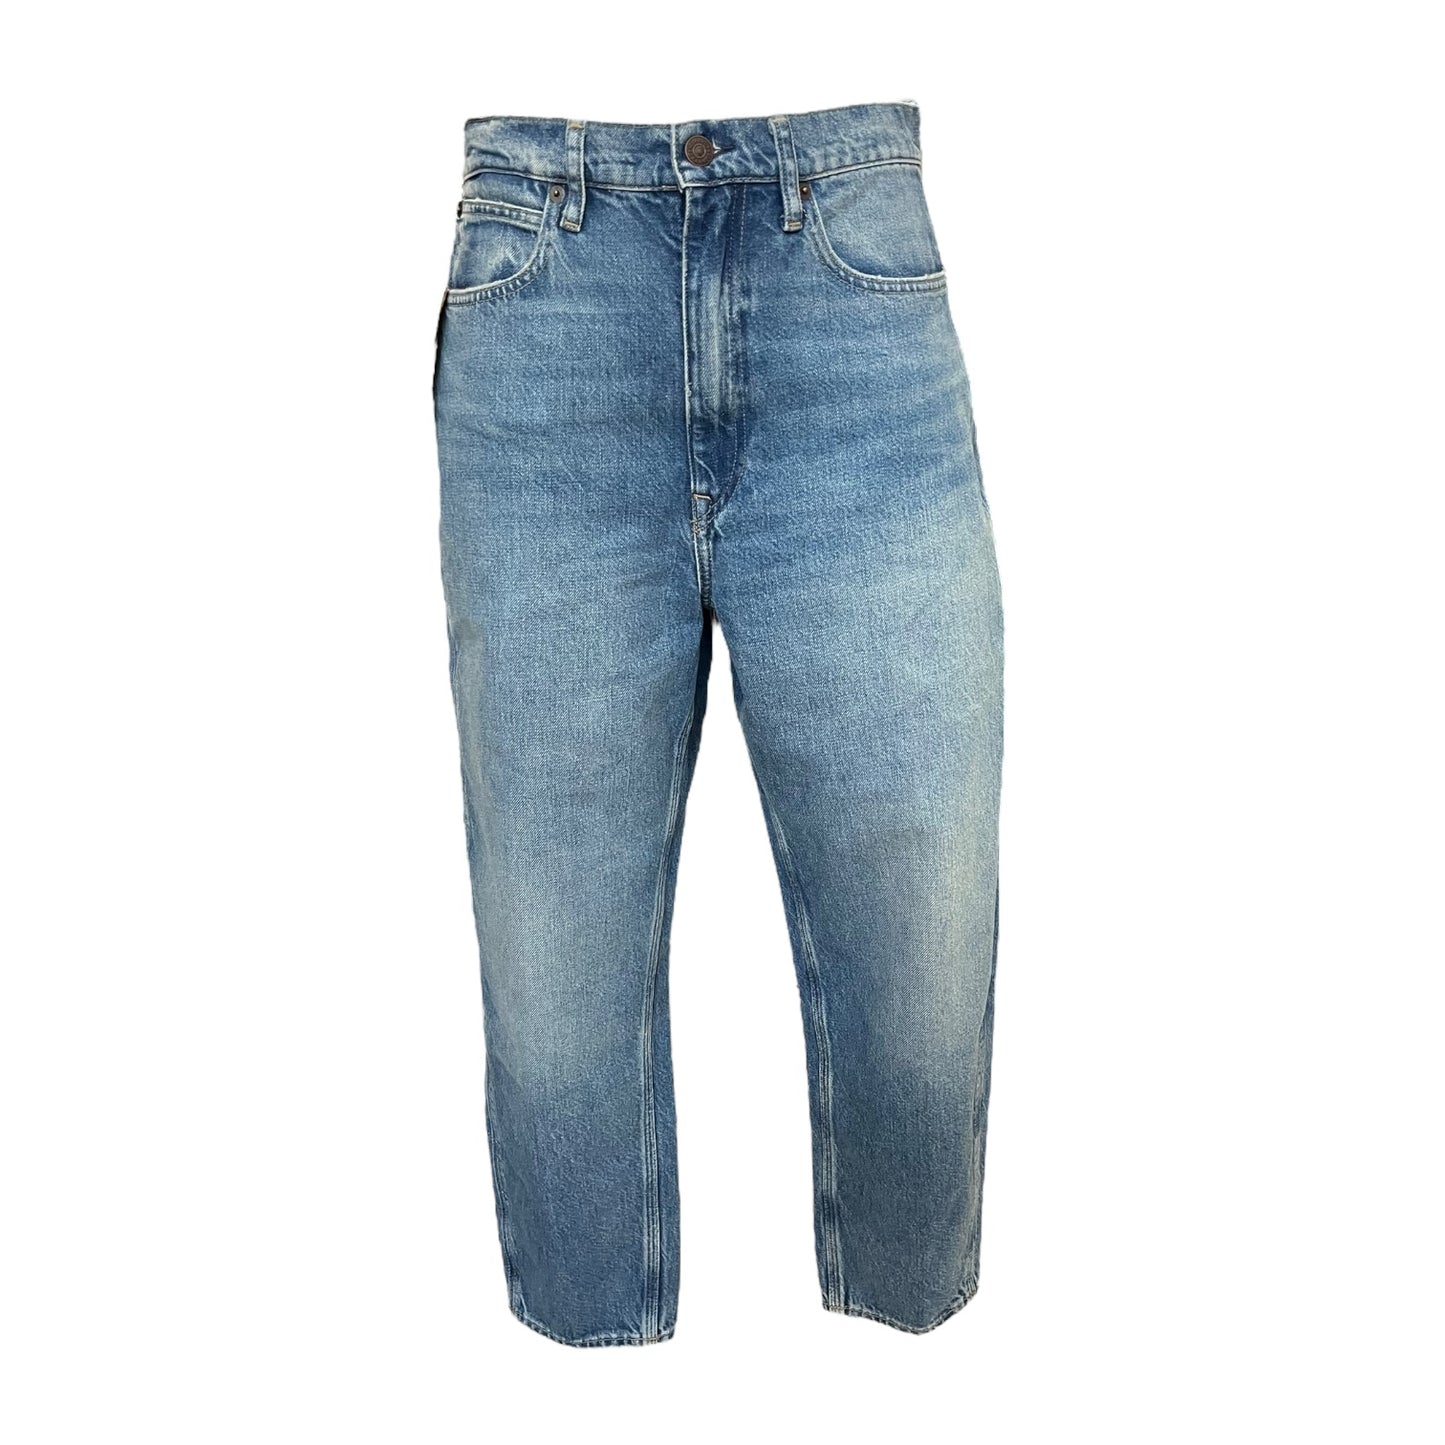 Ralph Lauren Carrot Jeans - 10 - NEW